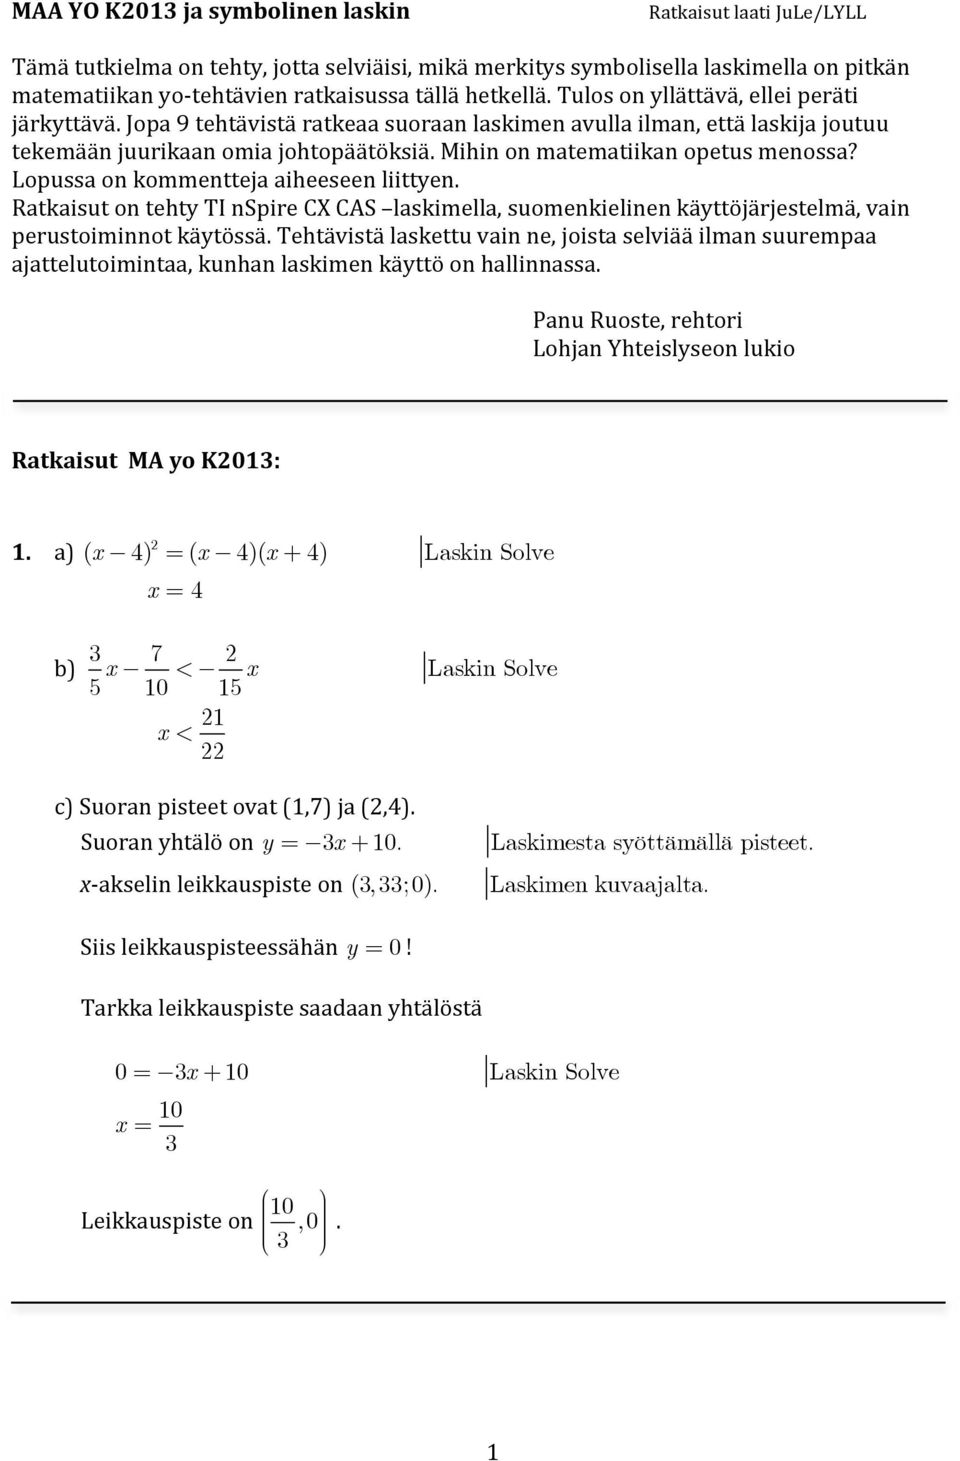 Mihin on matematiikan opetus menossa? Lopussa on kommentteja aiheeseen liittyen. Ratkaisut on tehty TI nspire CX CAS laskimella, suomenkielinen käyttöjärjestelmä, vain perustoiminnot käytössä.